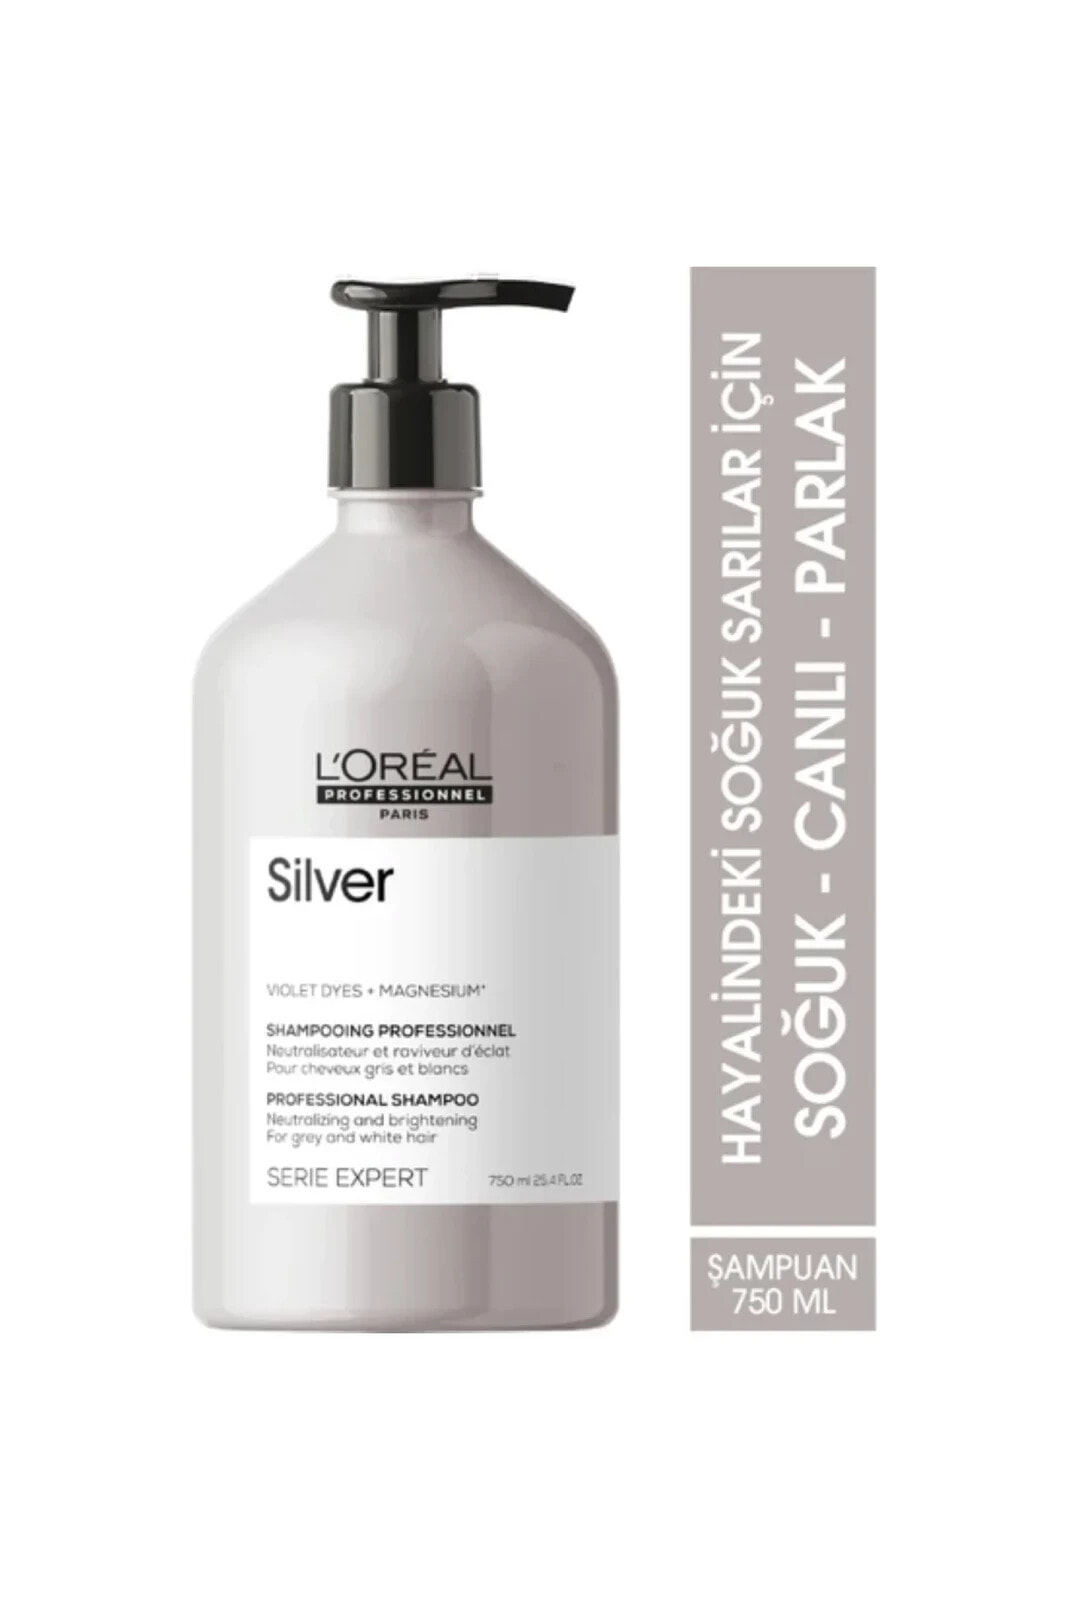 L'Oréal Professionnel Serie Expert Silver -Beyaz-Gri Saçlar İçin Arındırıcı Şampuan 750 mlSED4646963